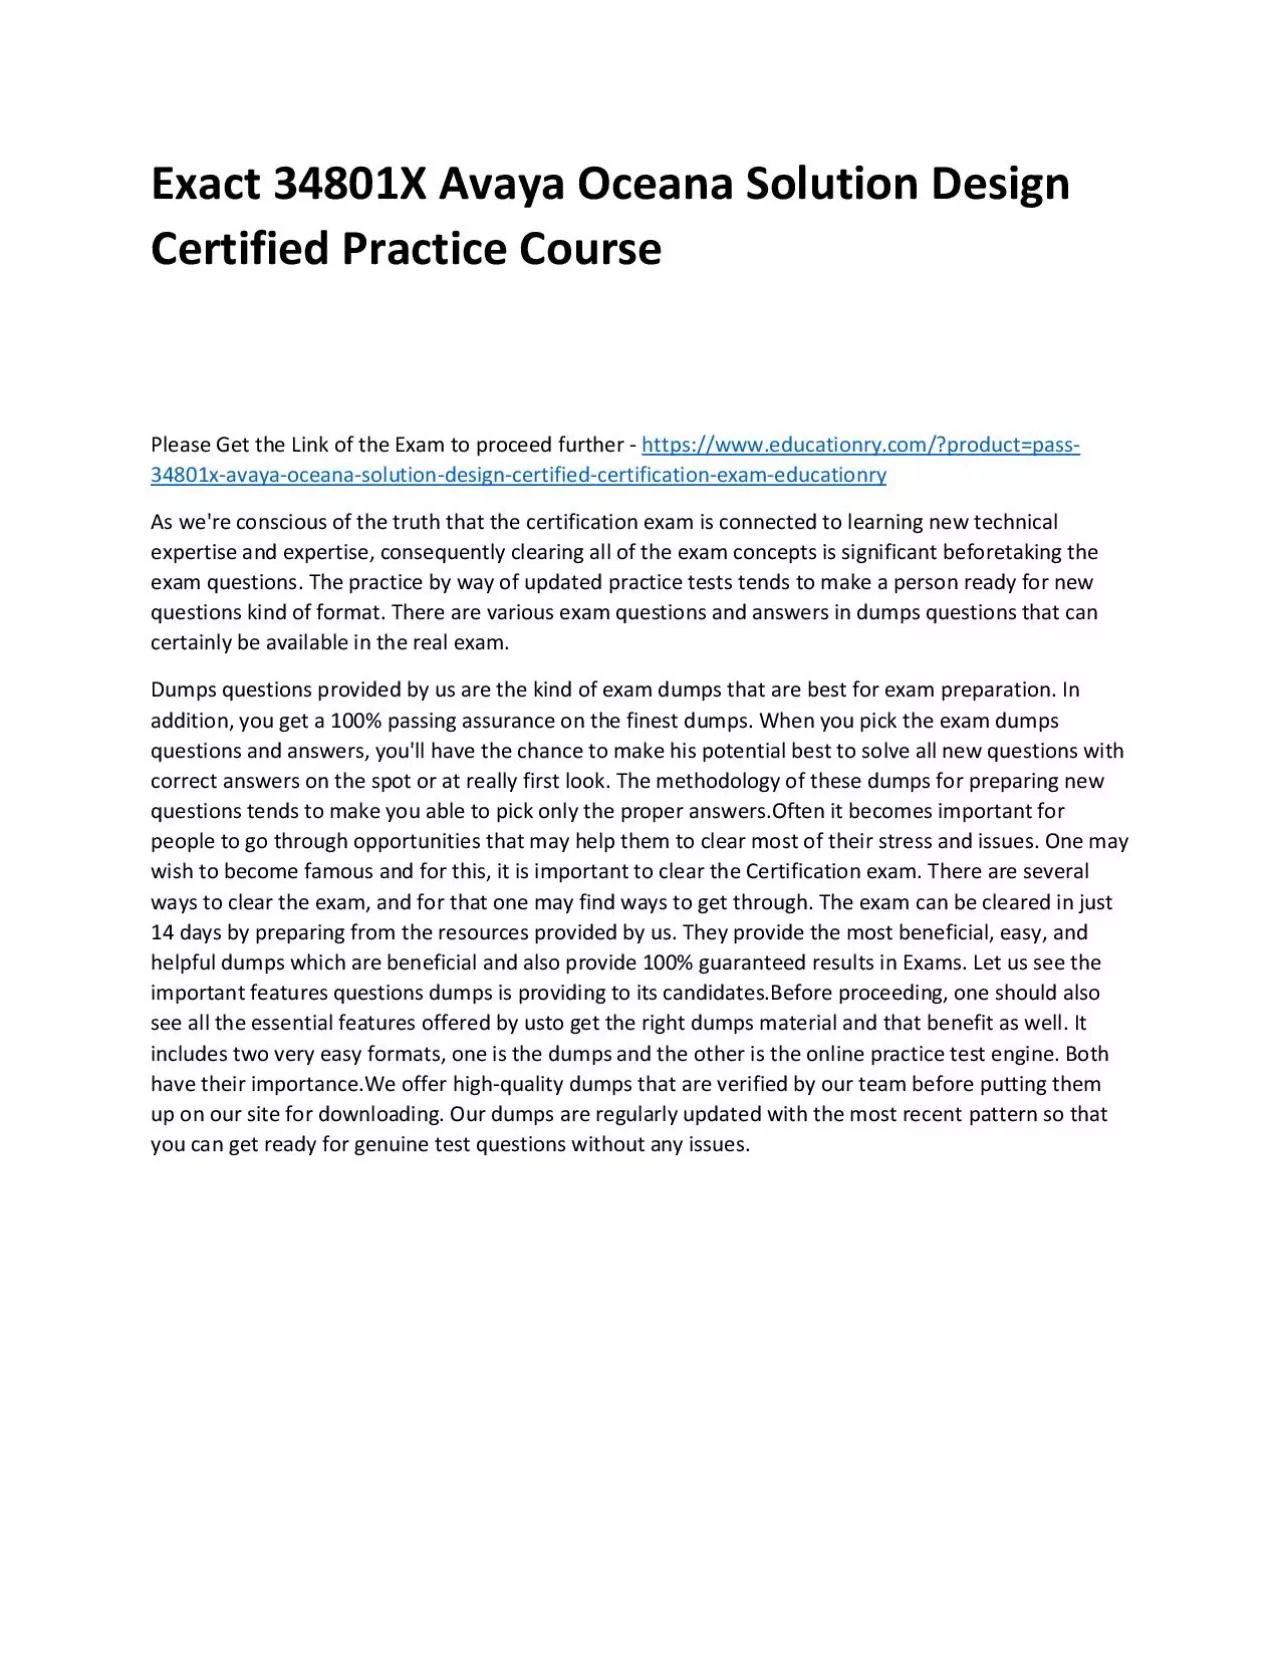 Exact 34801X Avaya Oceana Solution Design Certified Practice Course